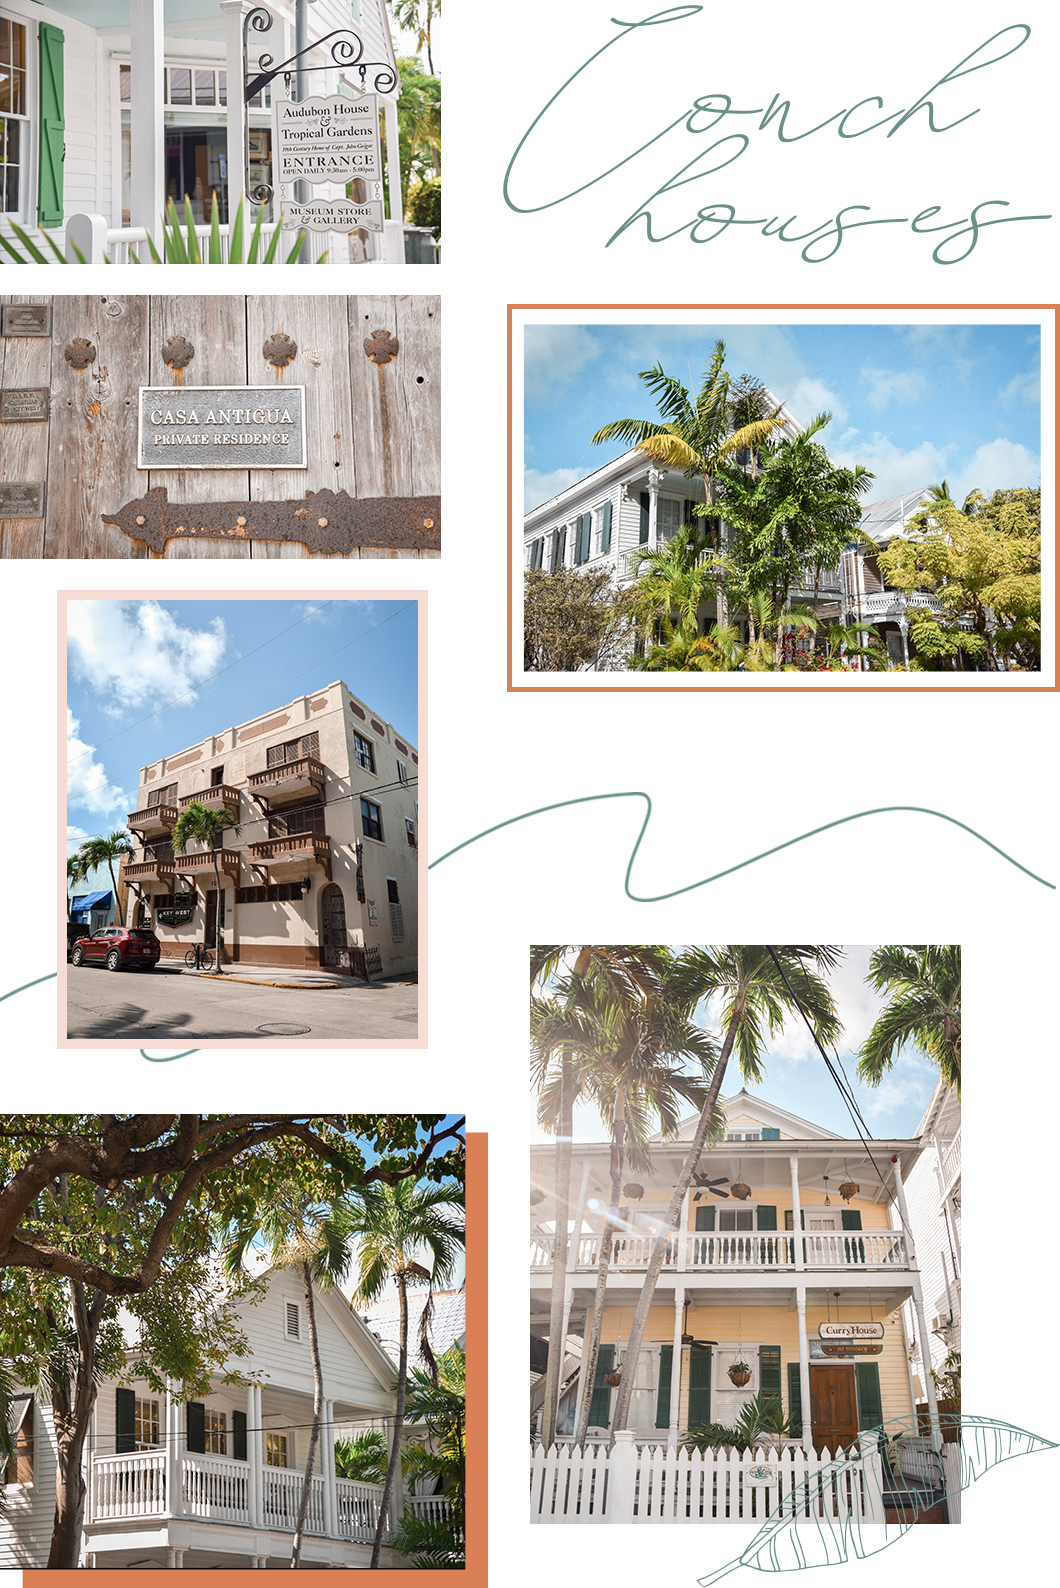 Conch houses, visite incontournable à Key West